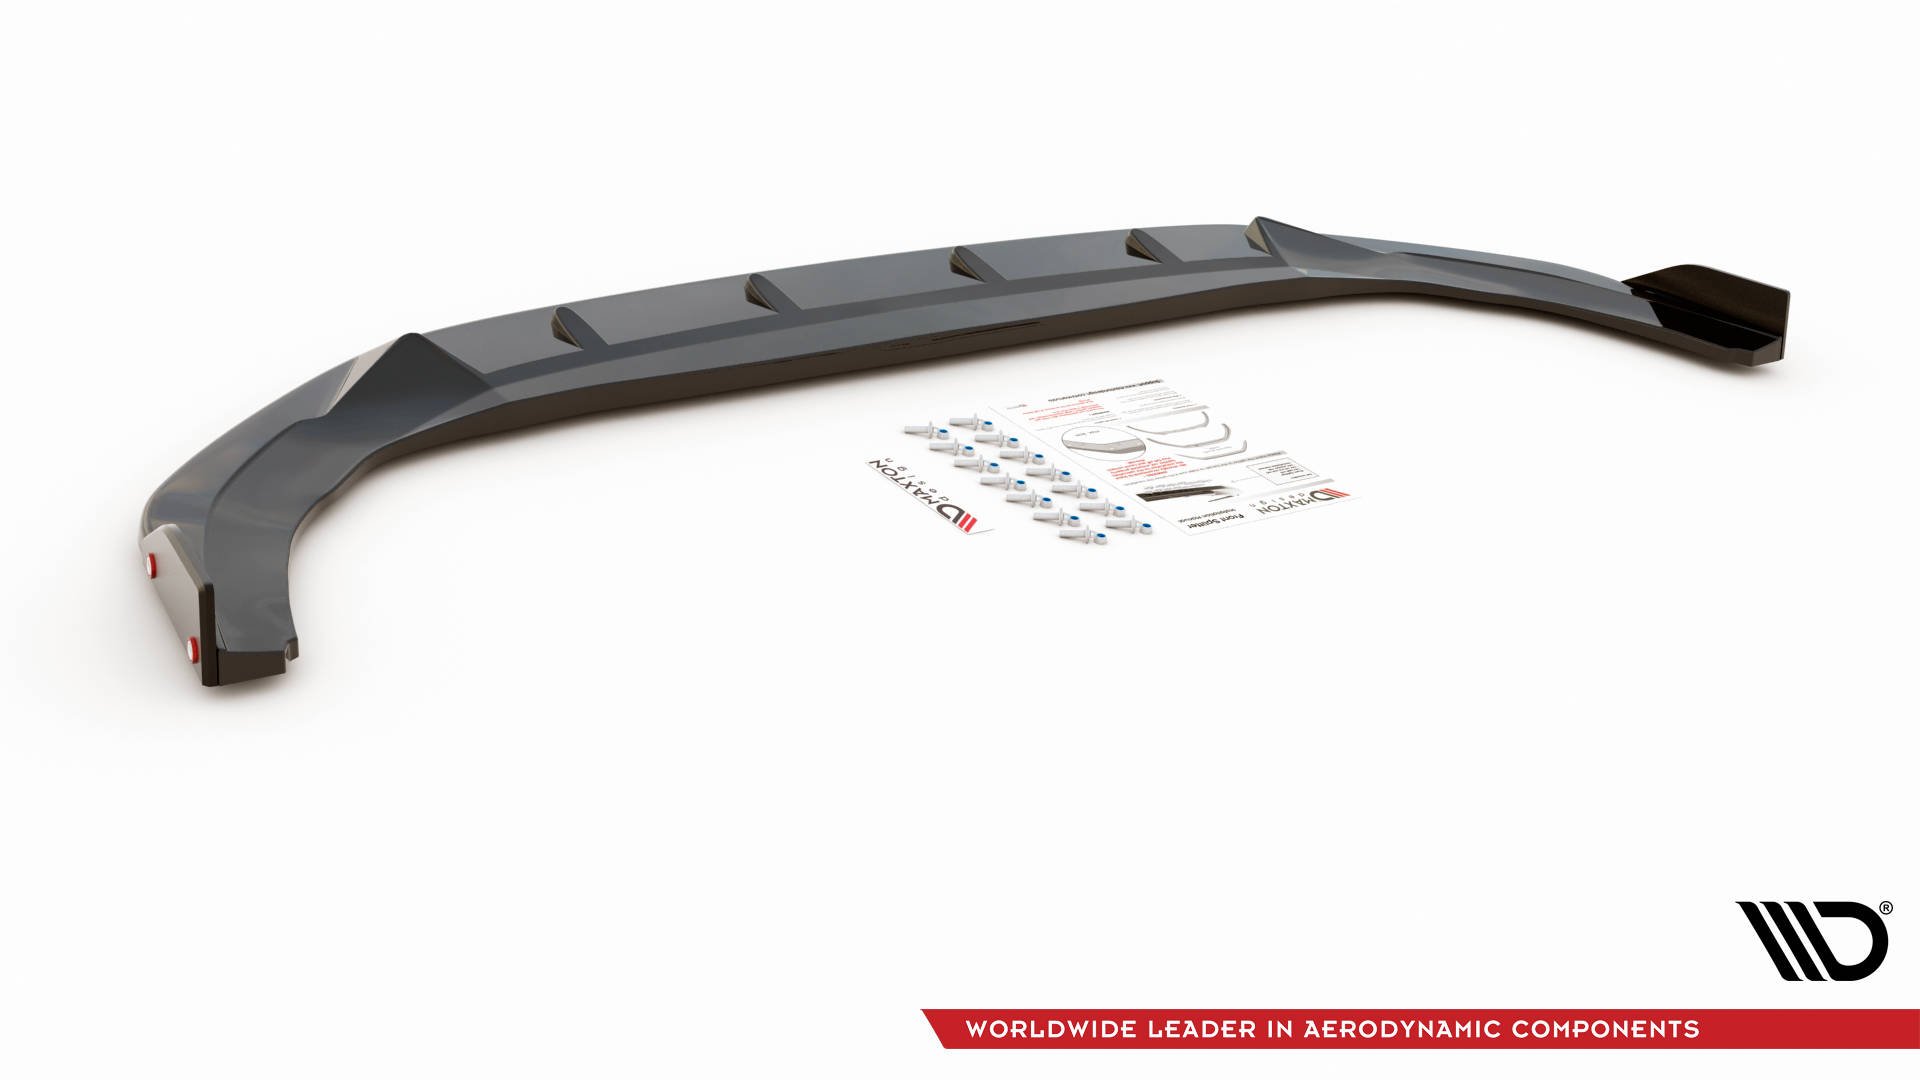 Maxton Design Front Ansatz V.3 +Flaps für Volkswagen Golf 8 GTI